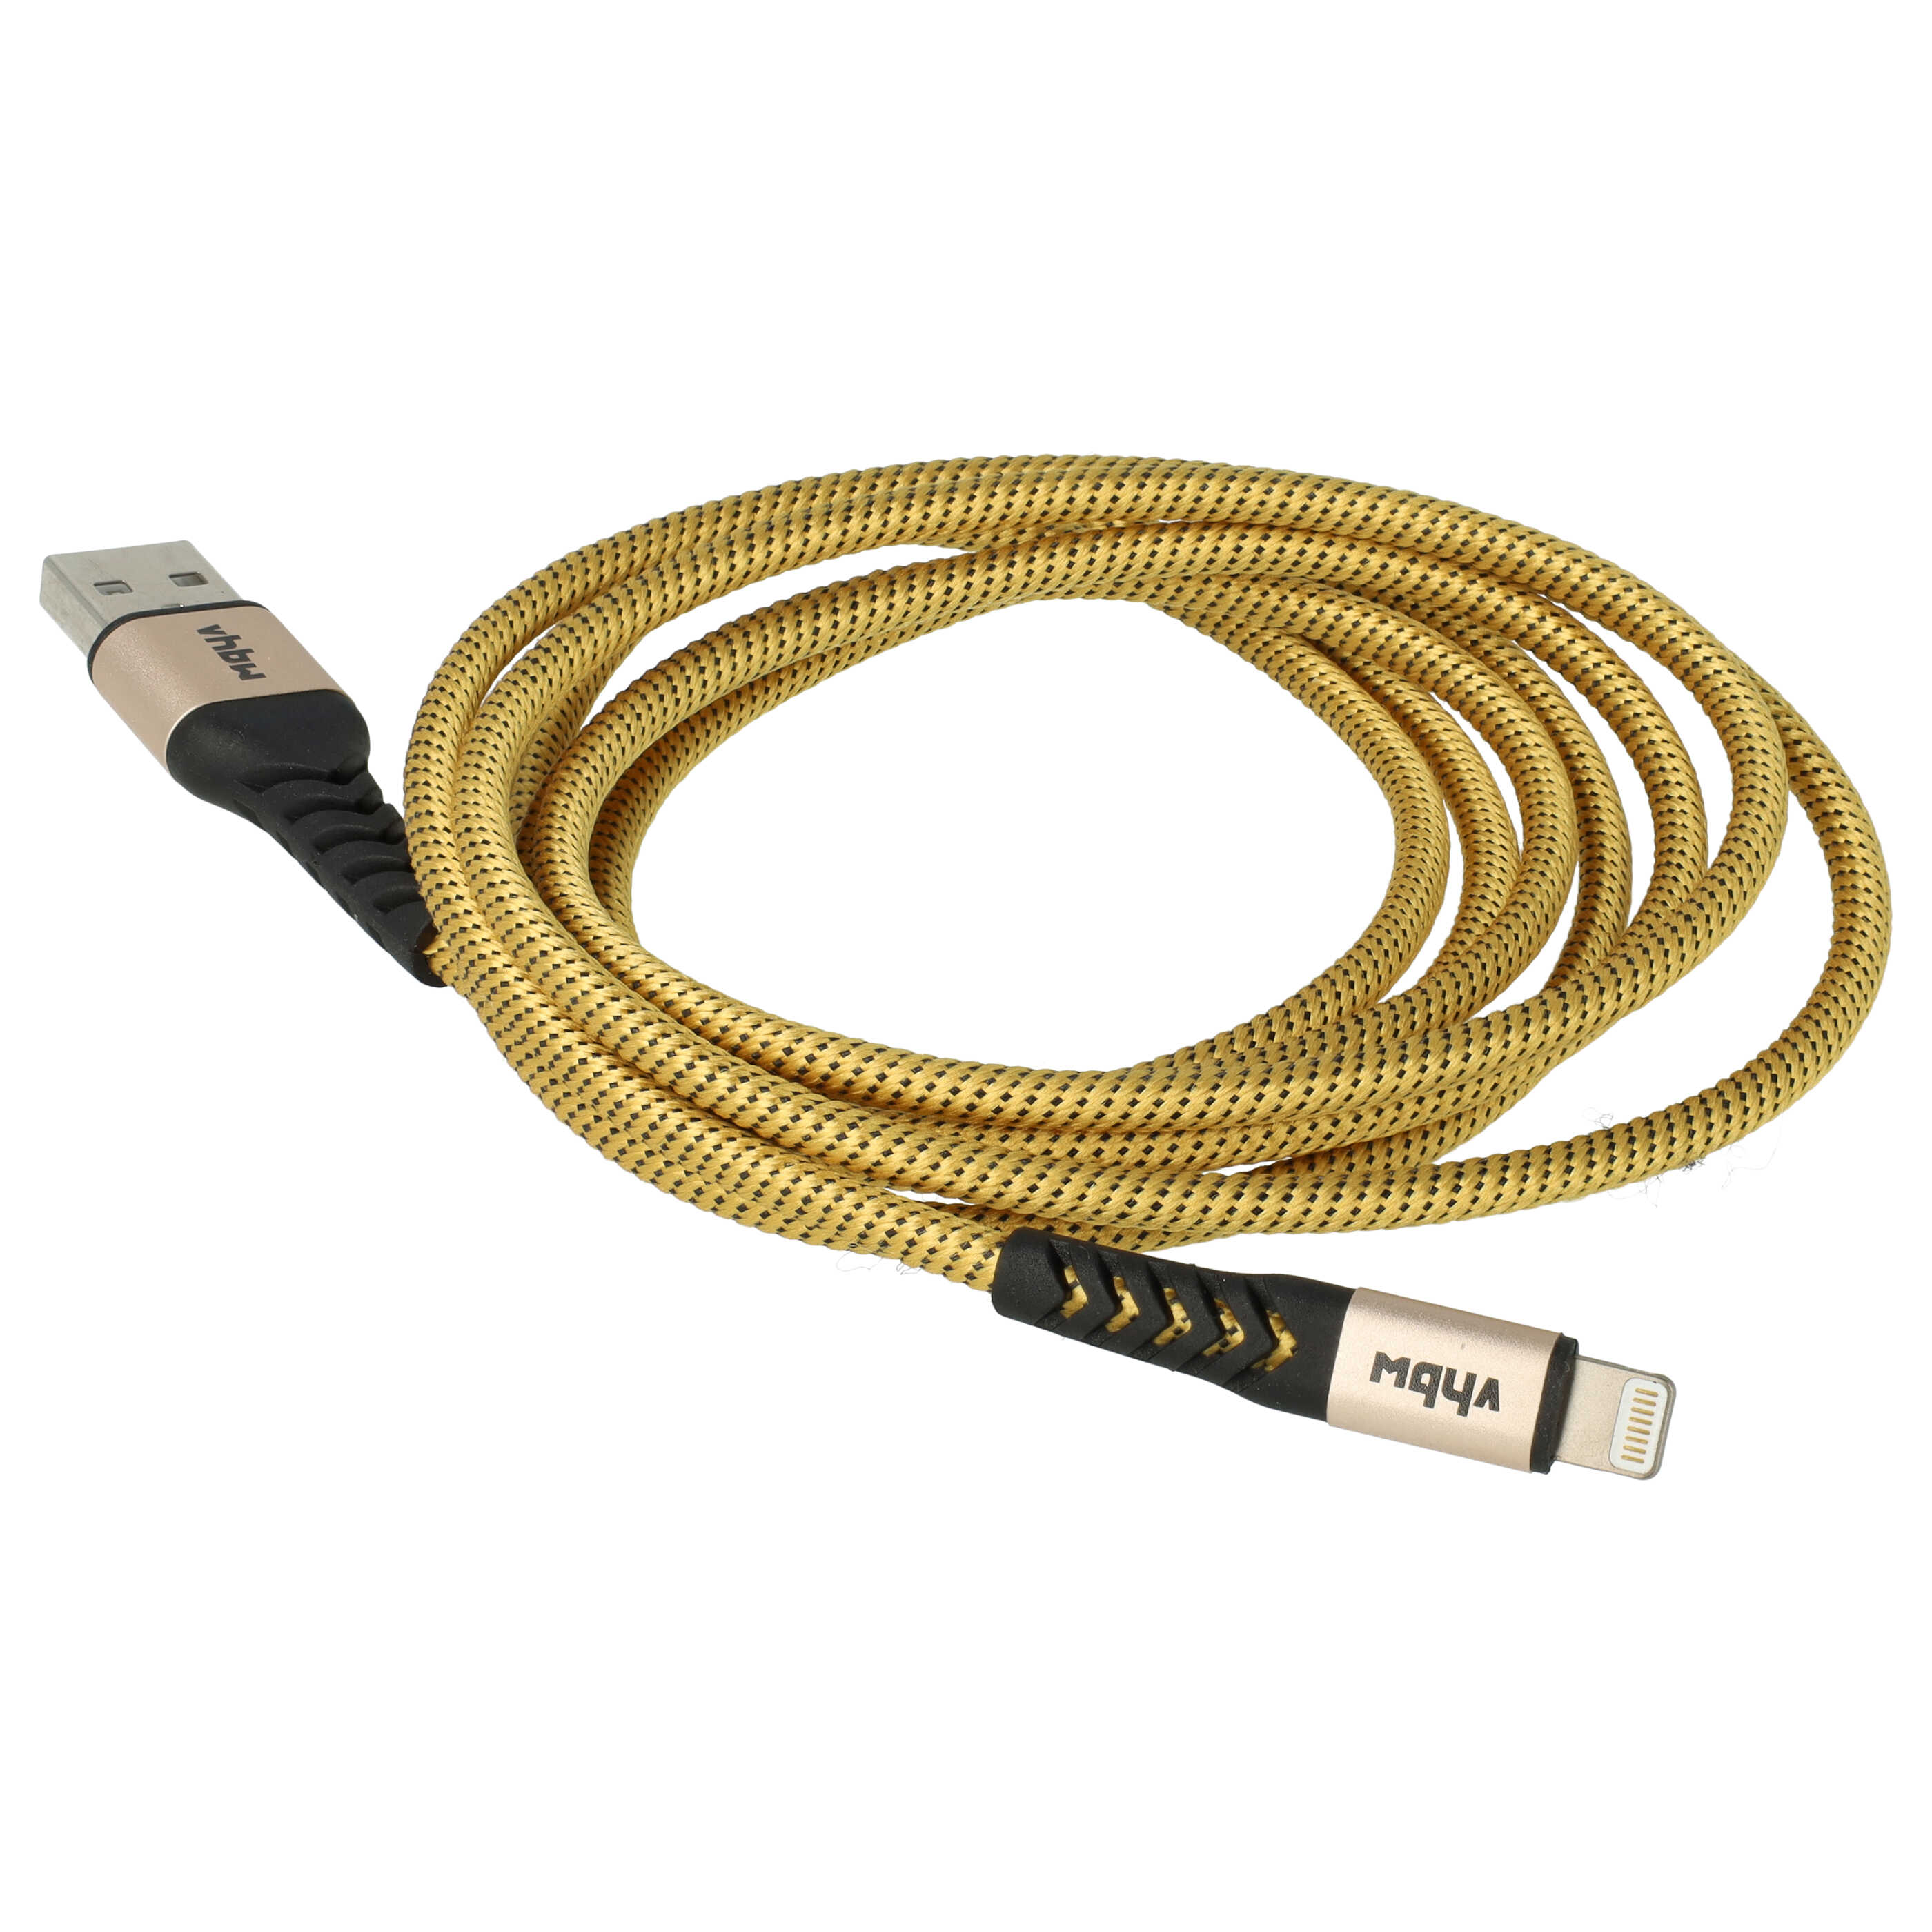 Kabel Lightning USB A do urządzeń iOS 1. generacji - czarny / żółty, 180 cm 